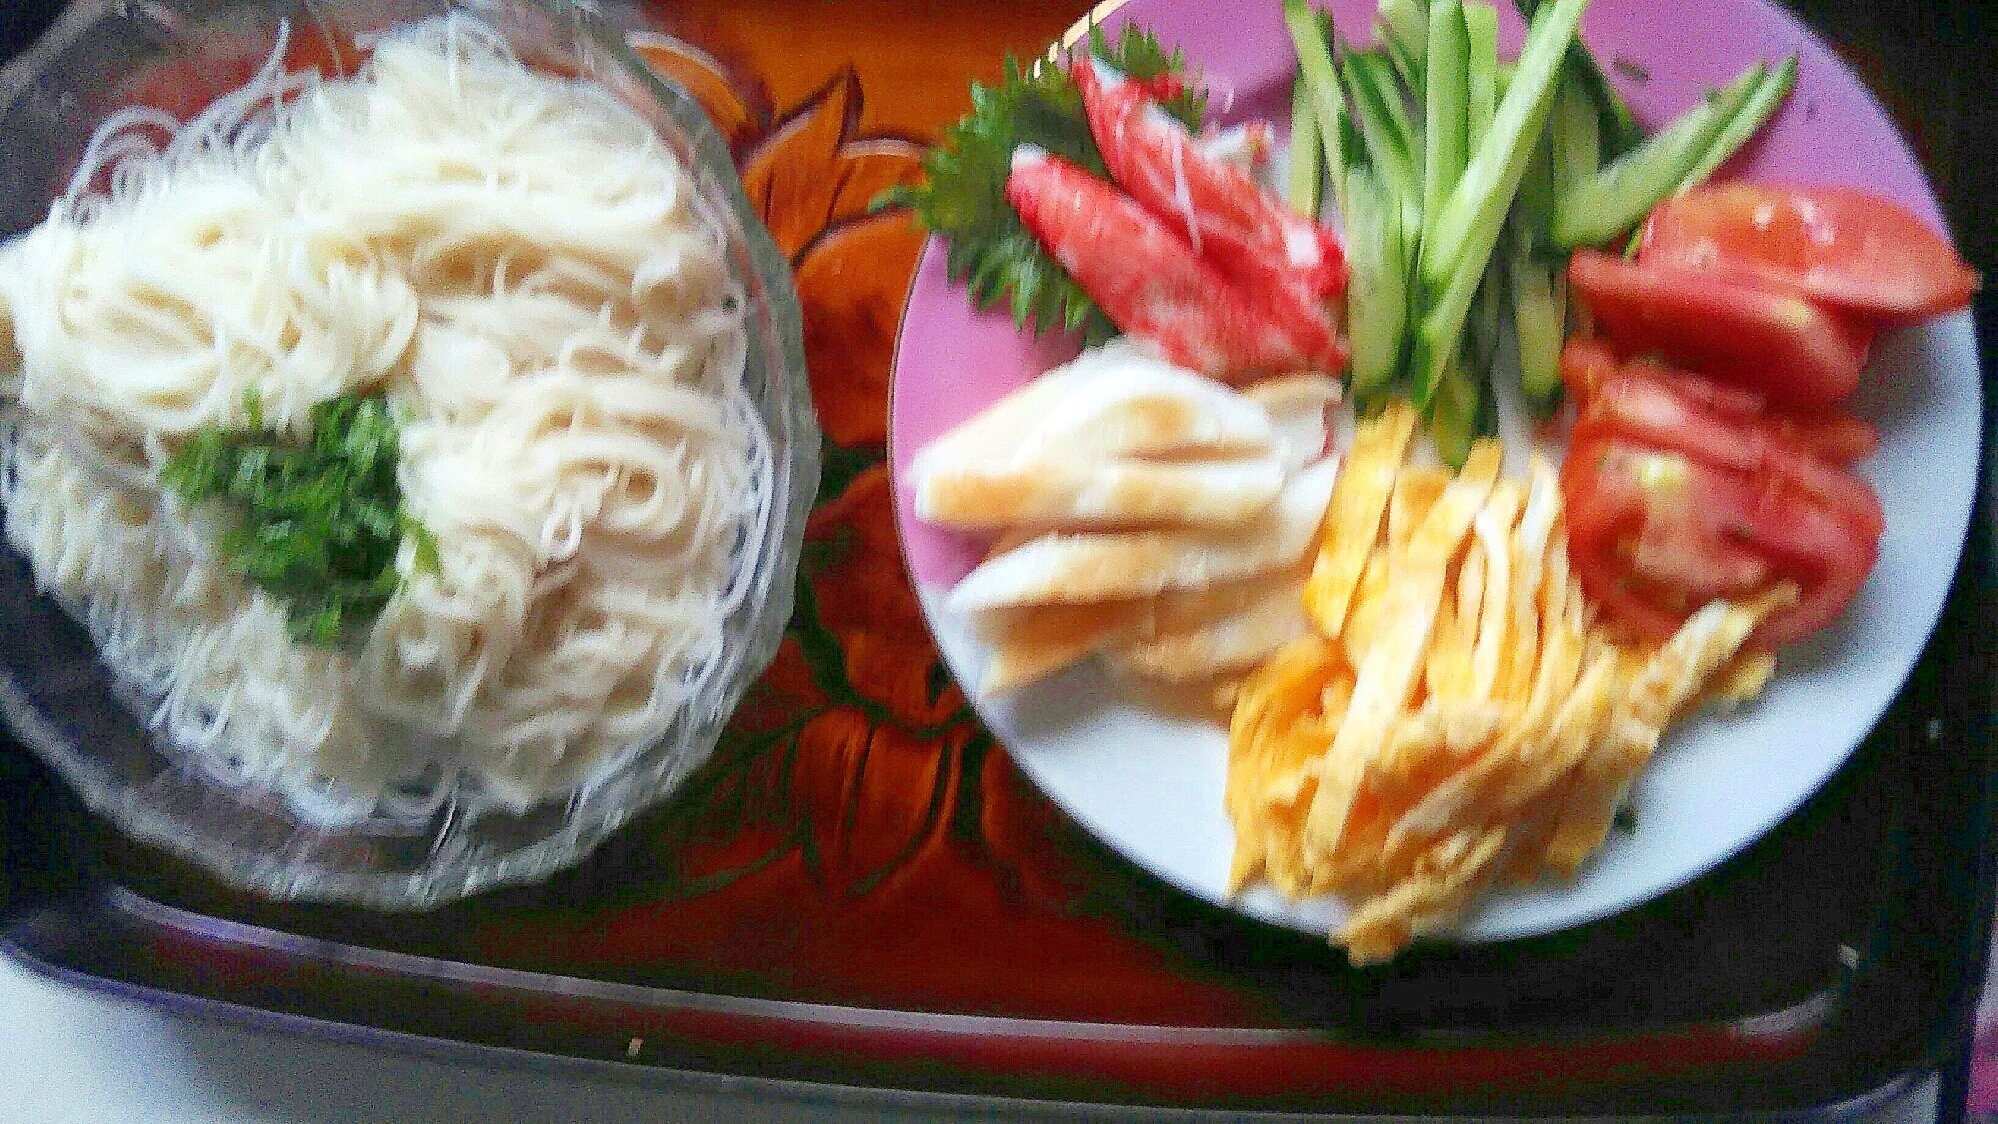 カニかま笹かま金糸卵の素麺プレート